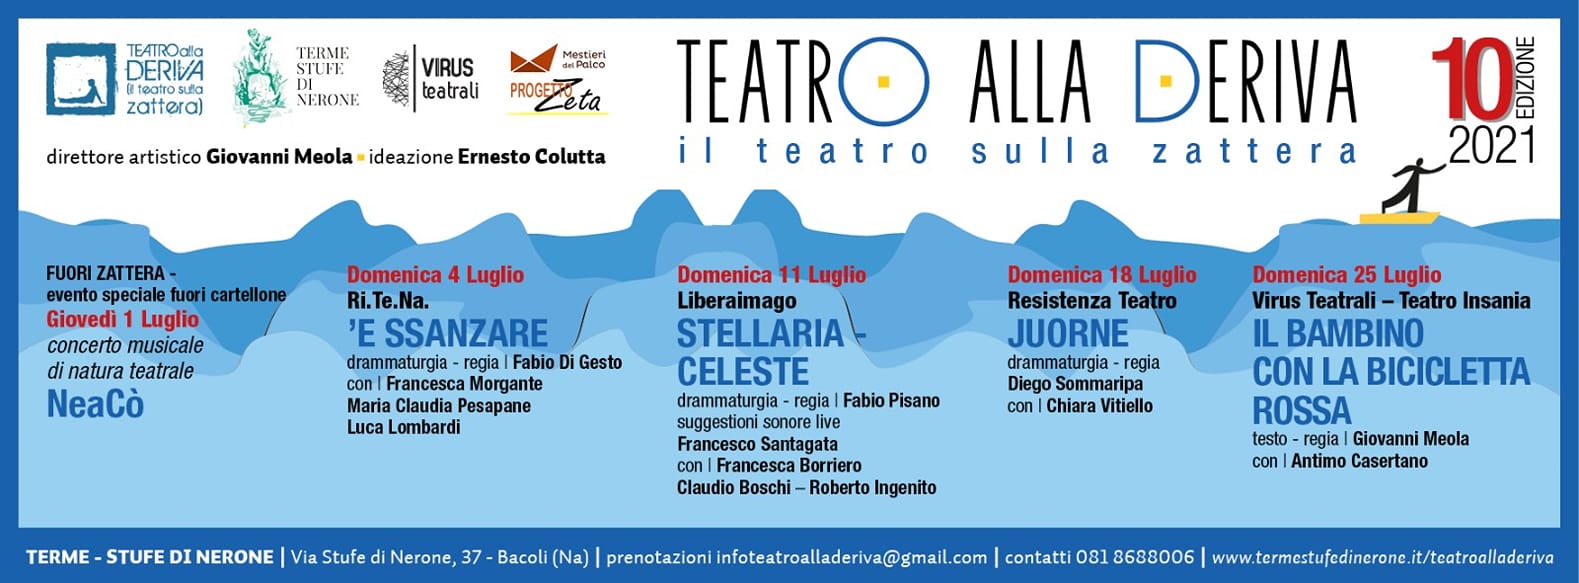 TEATROallaDERIVA (il teatro sulla zattera) alle Terme-Stufe di Nerone dall’1 al 25 Luglio 2021